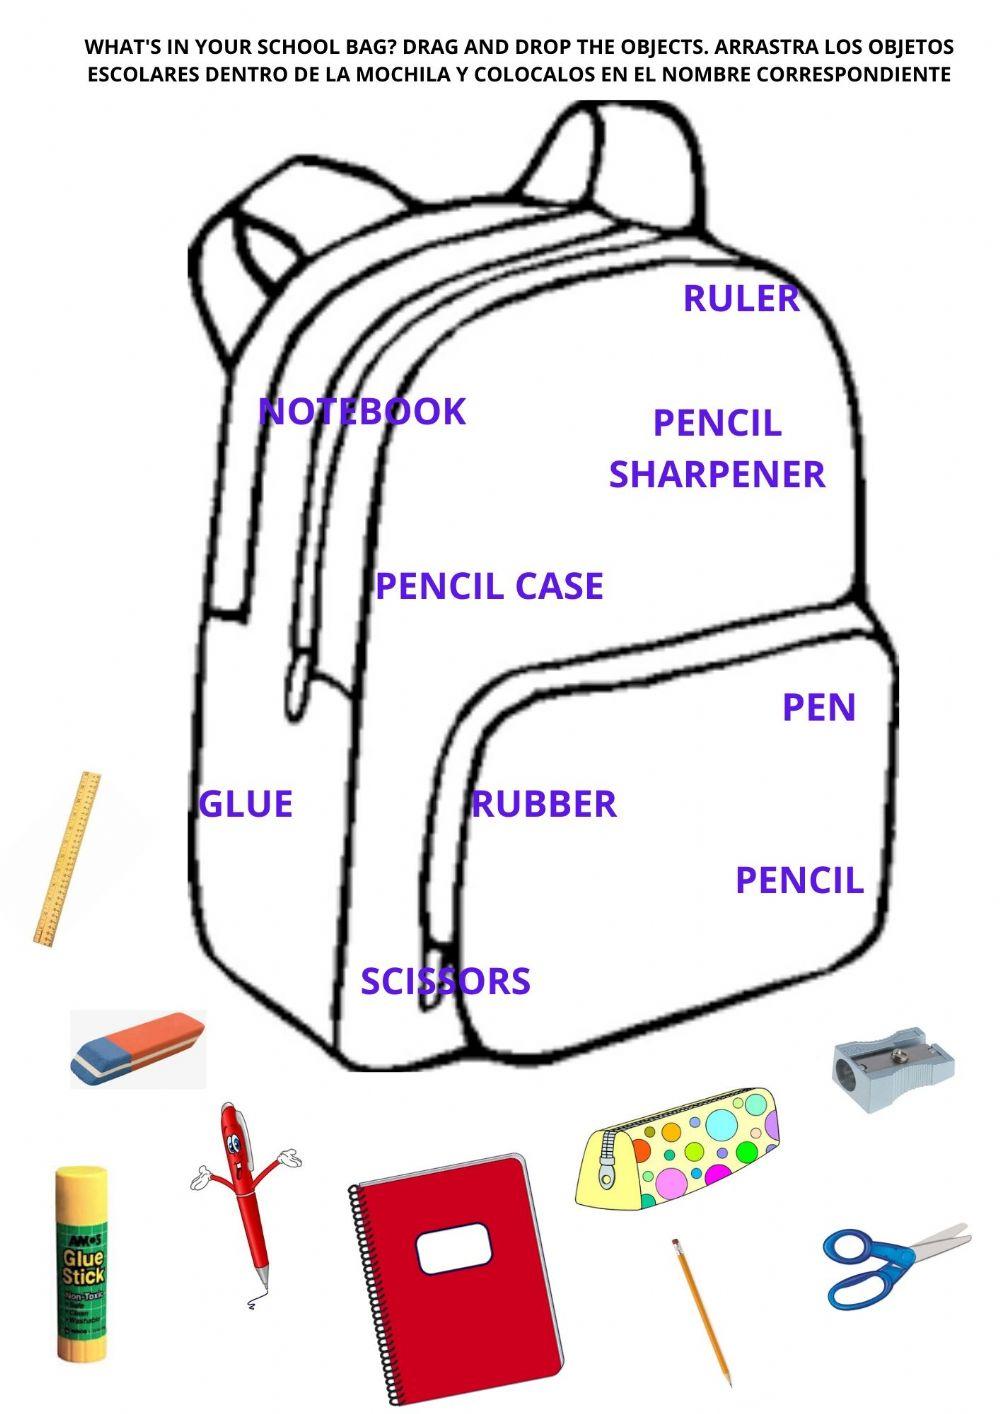 School objects